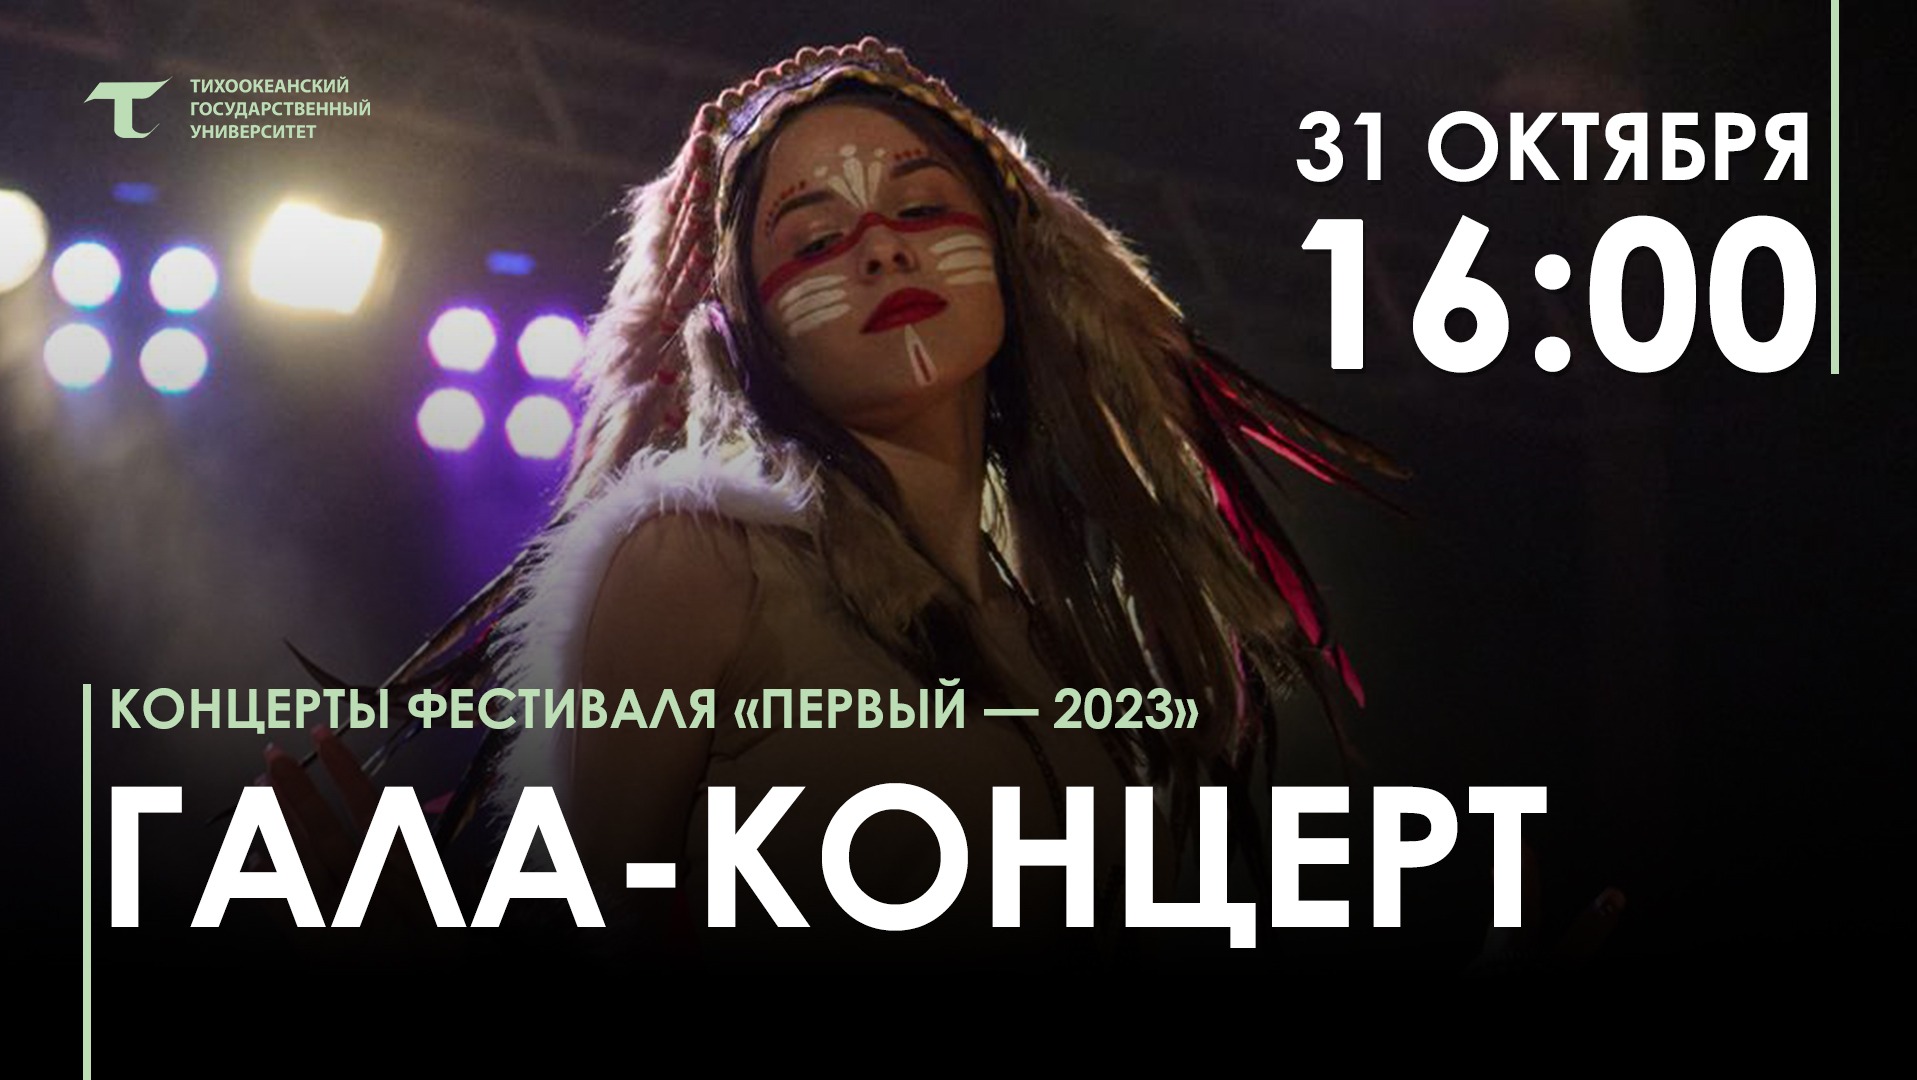 ГАЛА-КОНЦЕРТ фестиваля "Первый-2023"